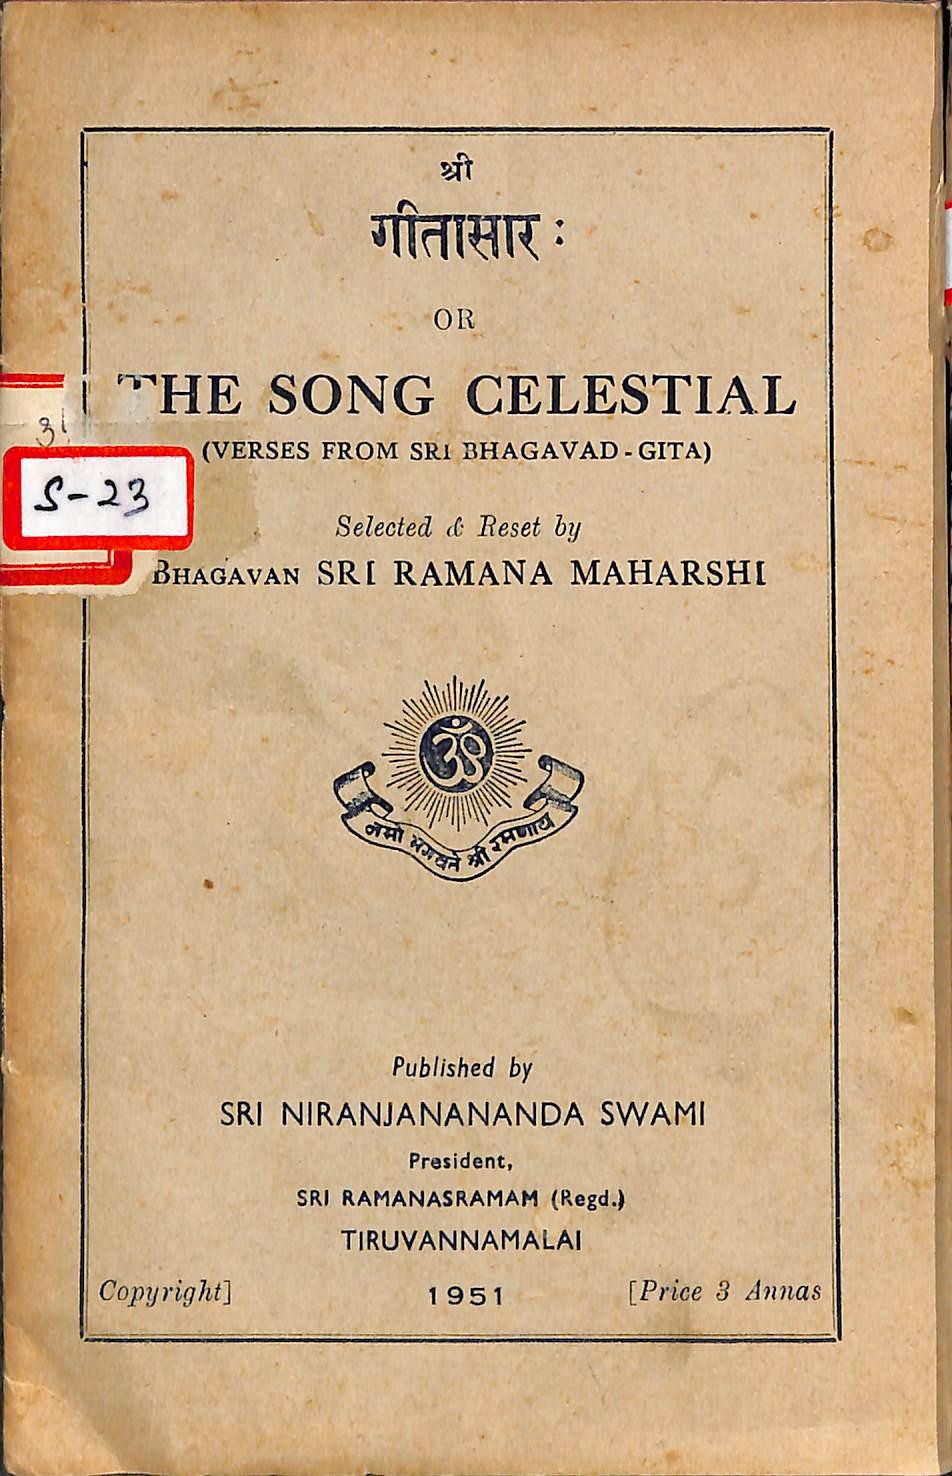 4th ed. 1951, Sri Ramanasramam